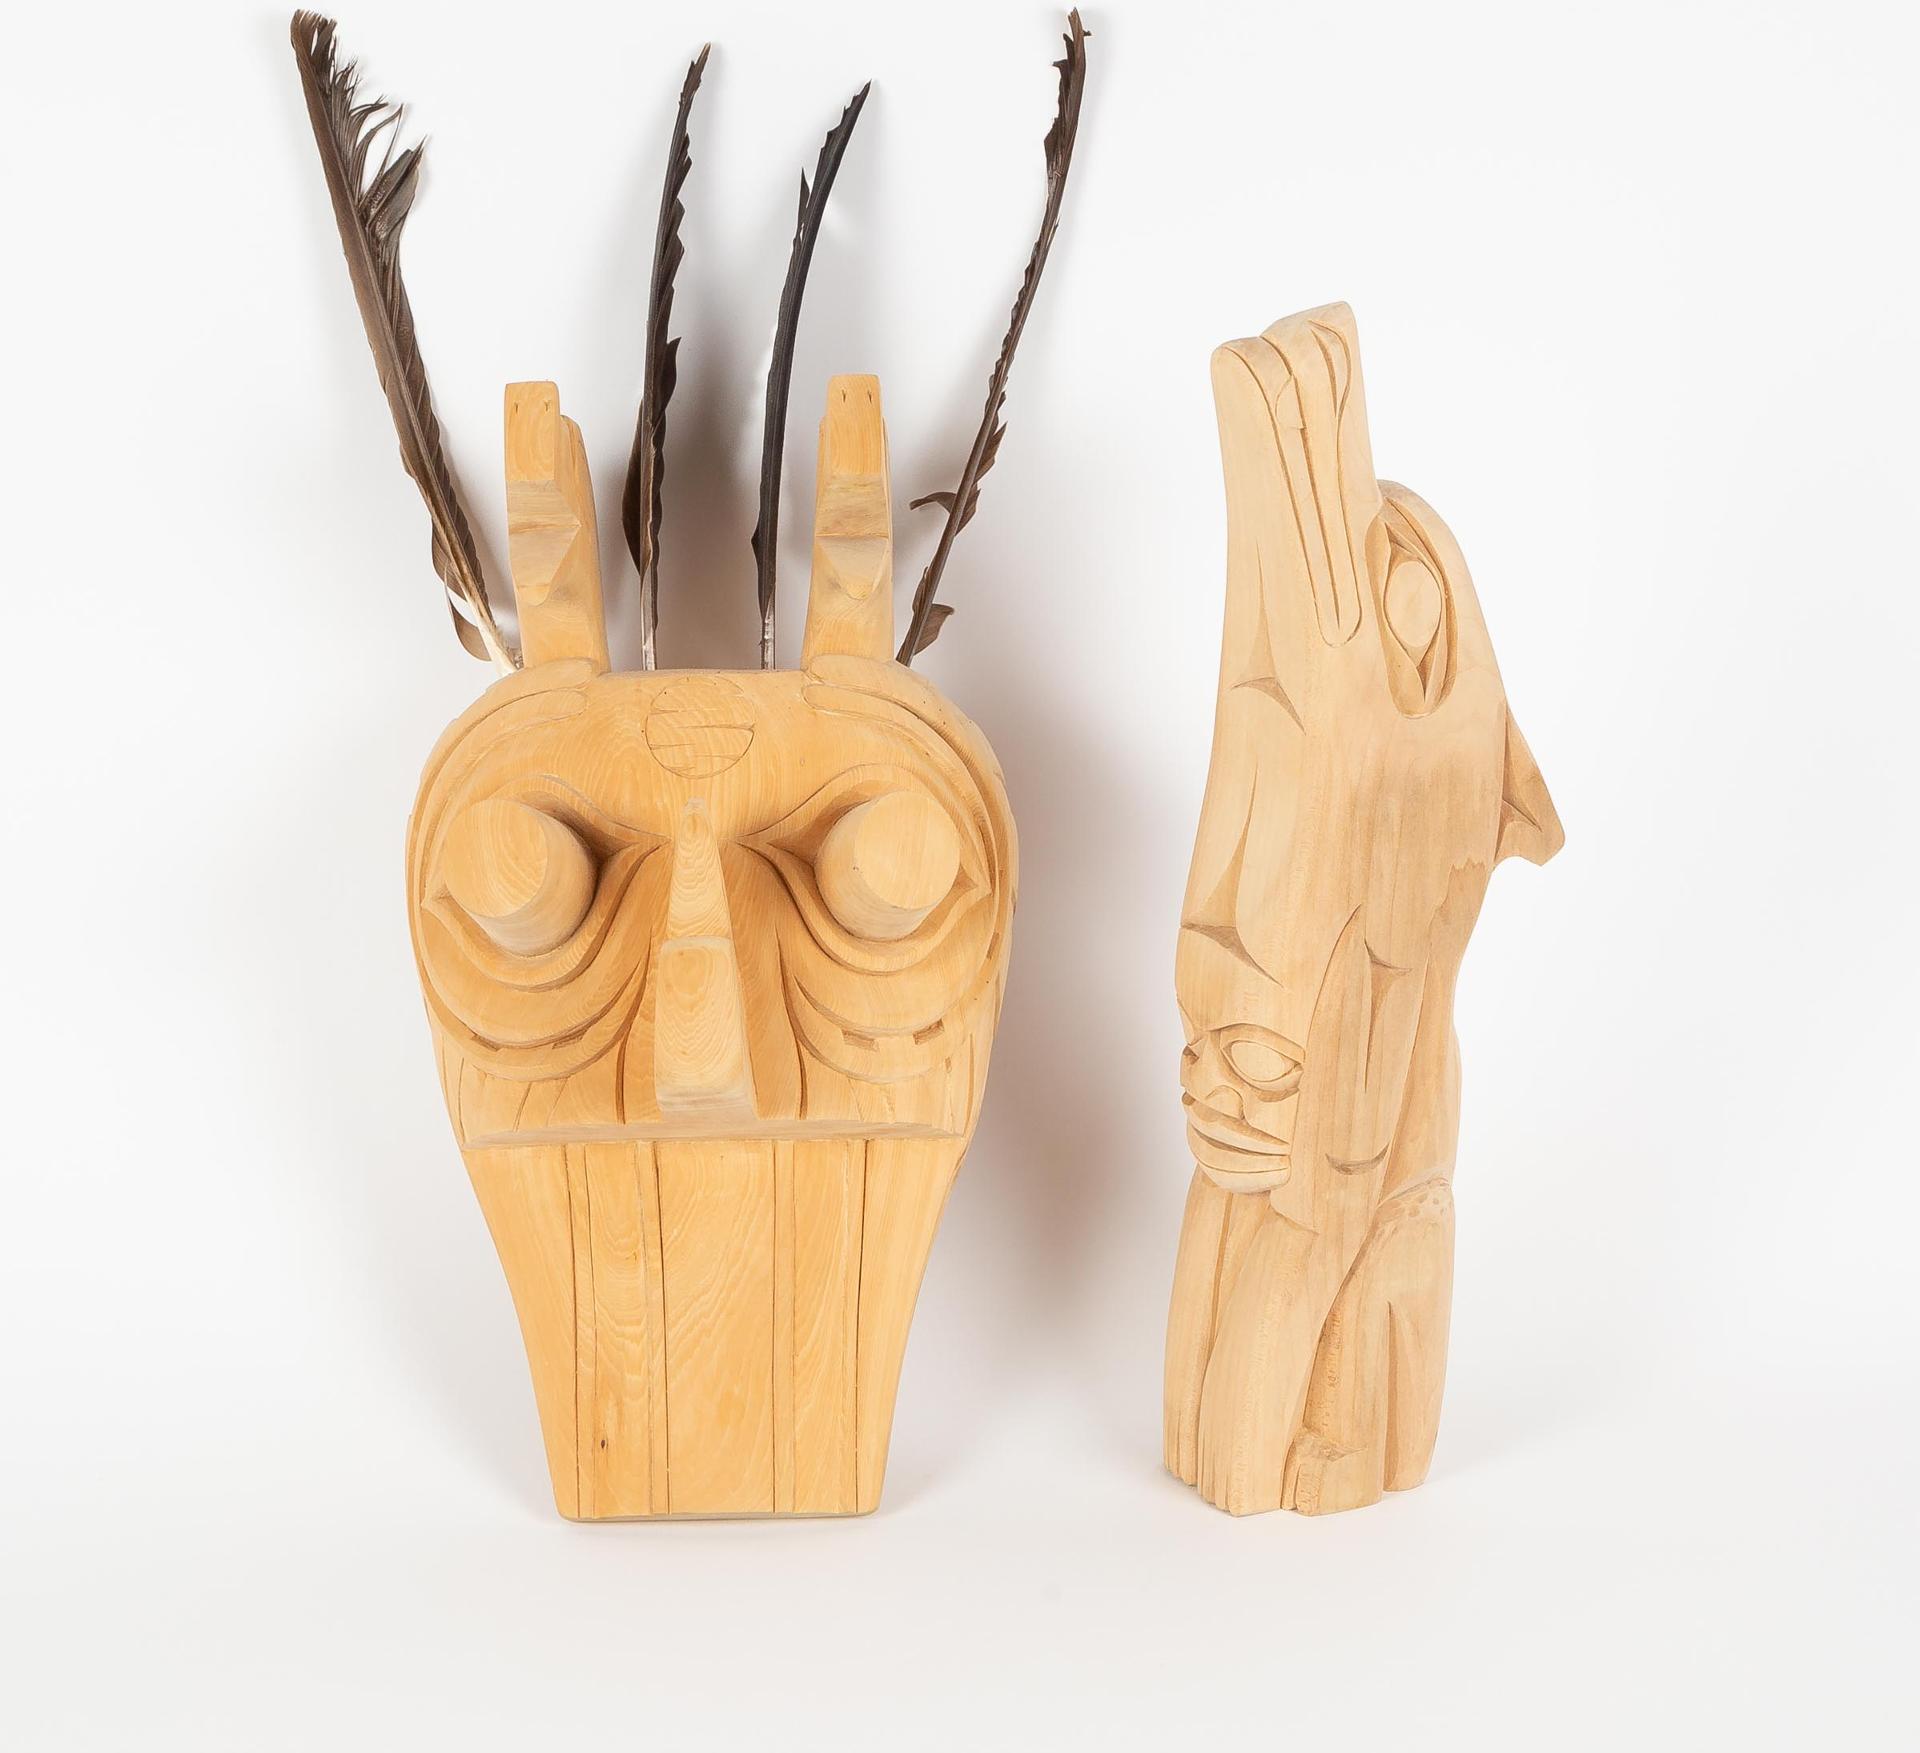 Doug Horne - Northwest Coast Mask And Carving